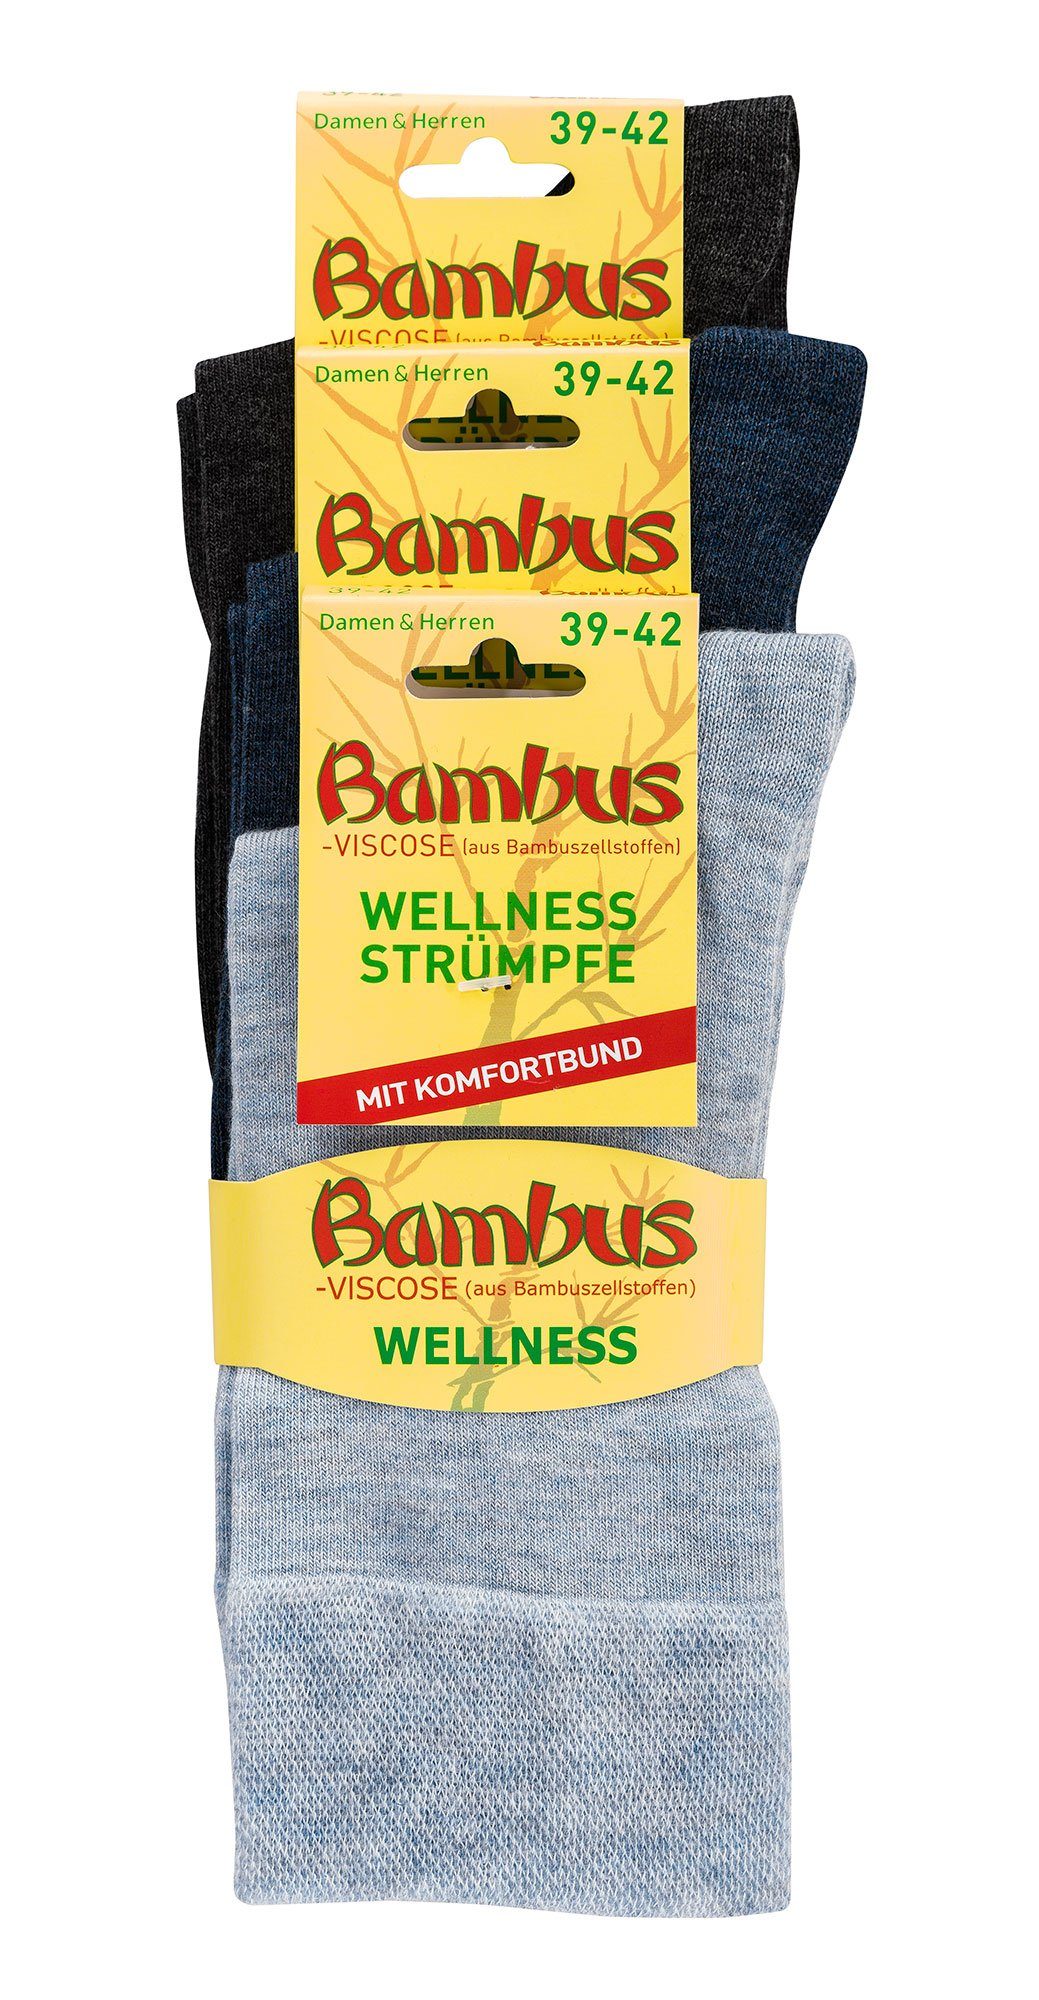 TippTexx 24 Freizeitsocken 6 Paar in Socken Antiloch-Garantie mit weiche Melange-Farben Bambus